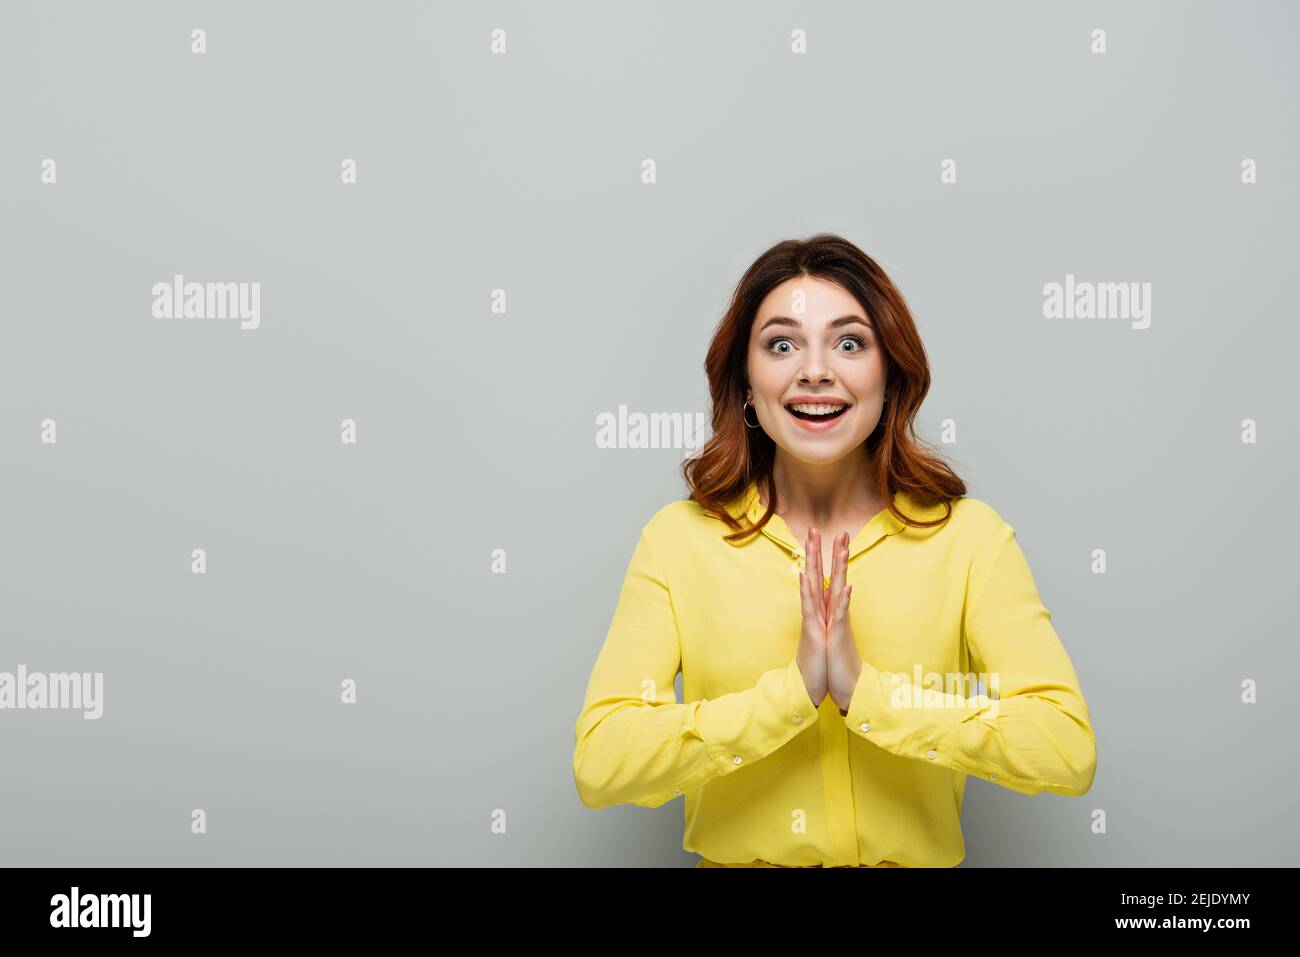 donna allegra che batte le mani e sorride alla macchina fotografica su grigio Foto Stock